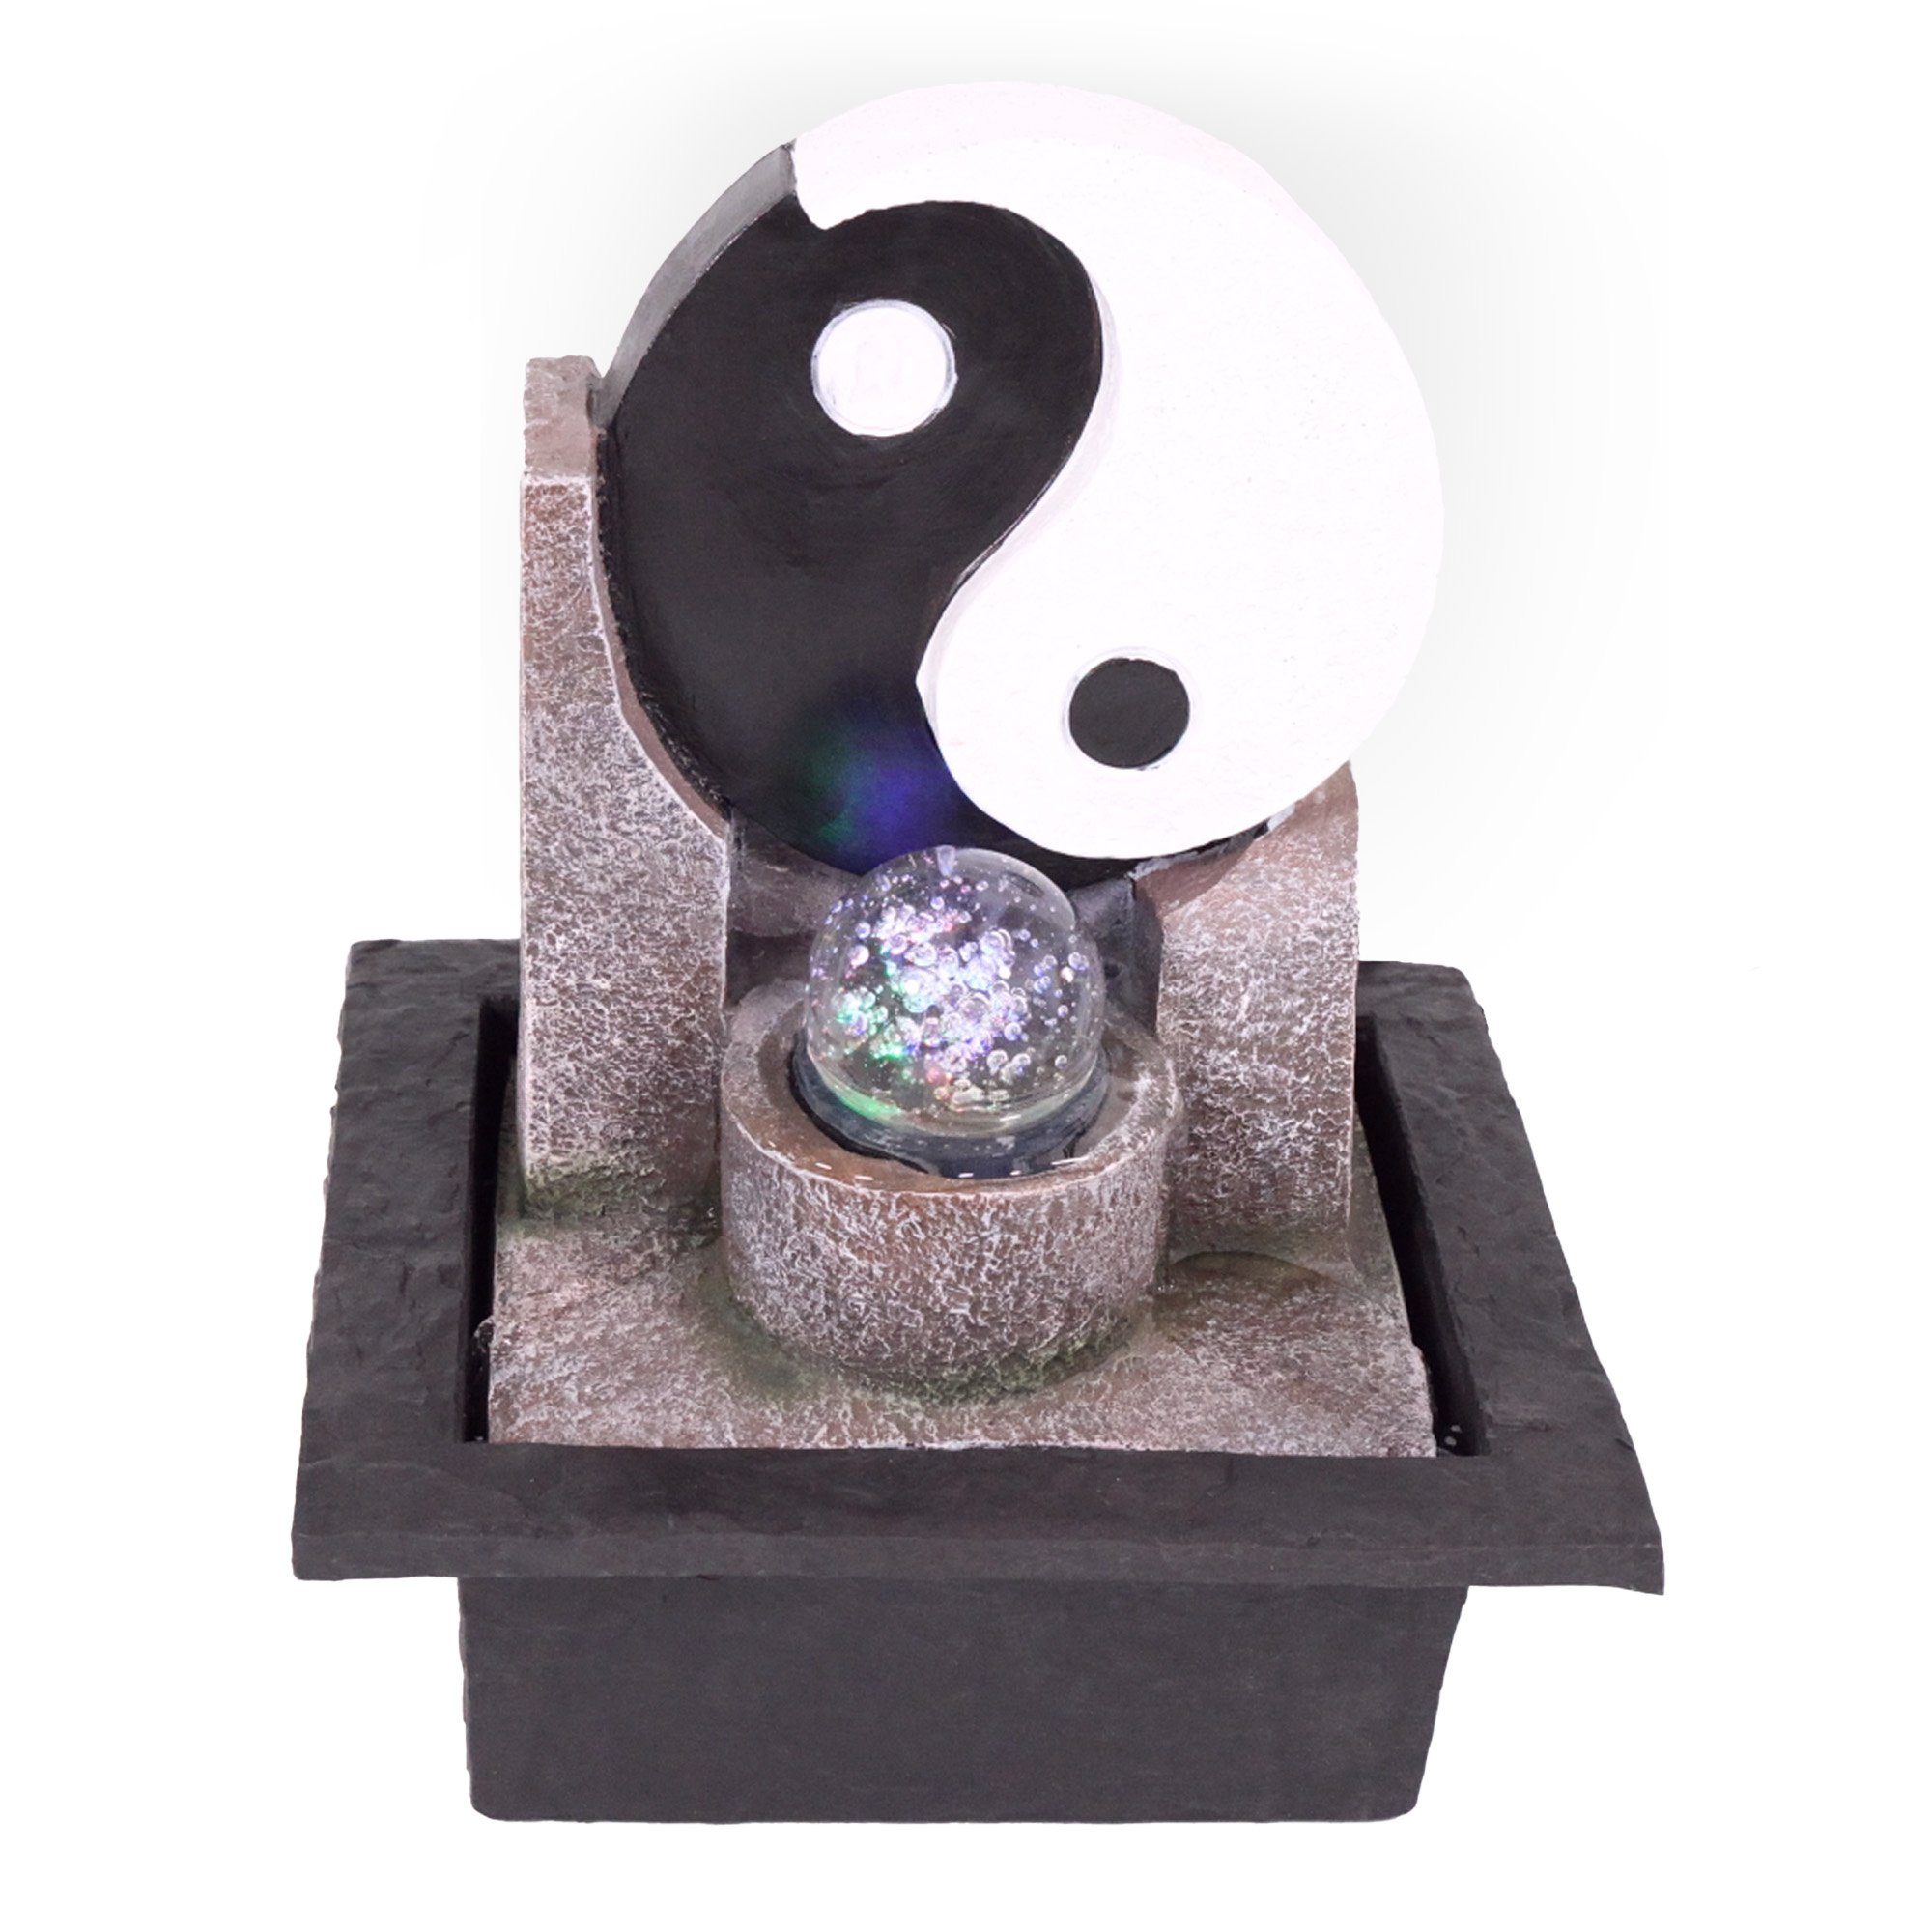 NATIV Zimmerbrunnen Motiv-Tischbrunnen mit Pumpe und Beleuchtung, LED-Beleuchtung Yin Yang | Zimmerbrunnen